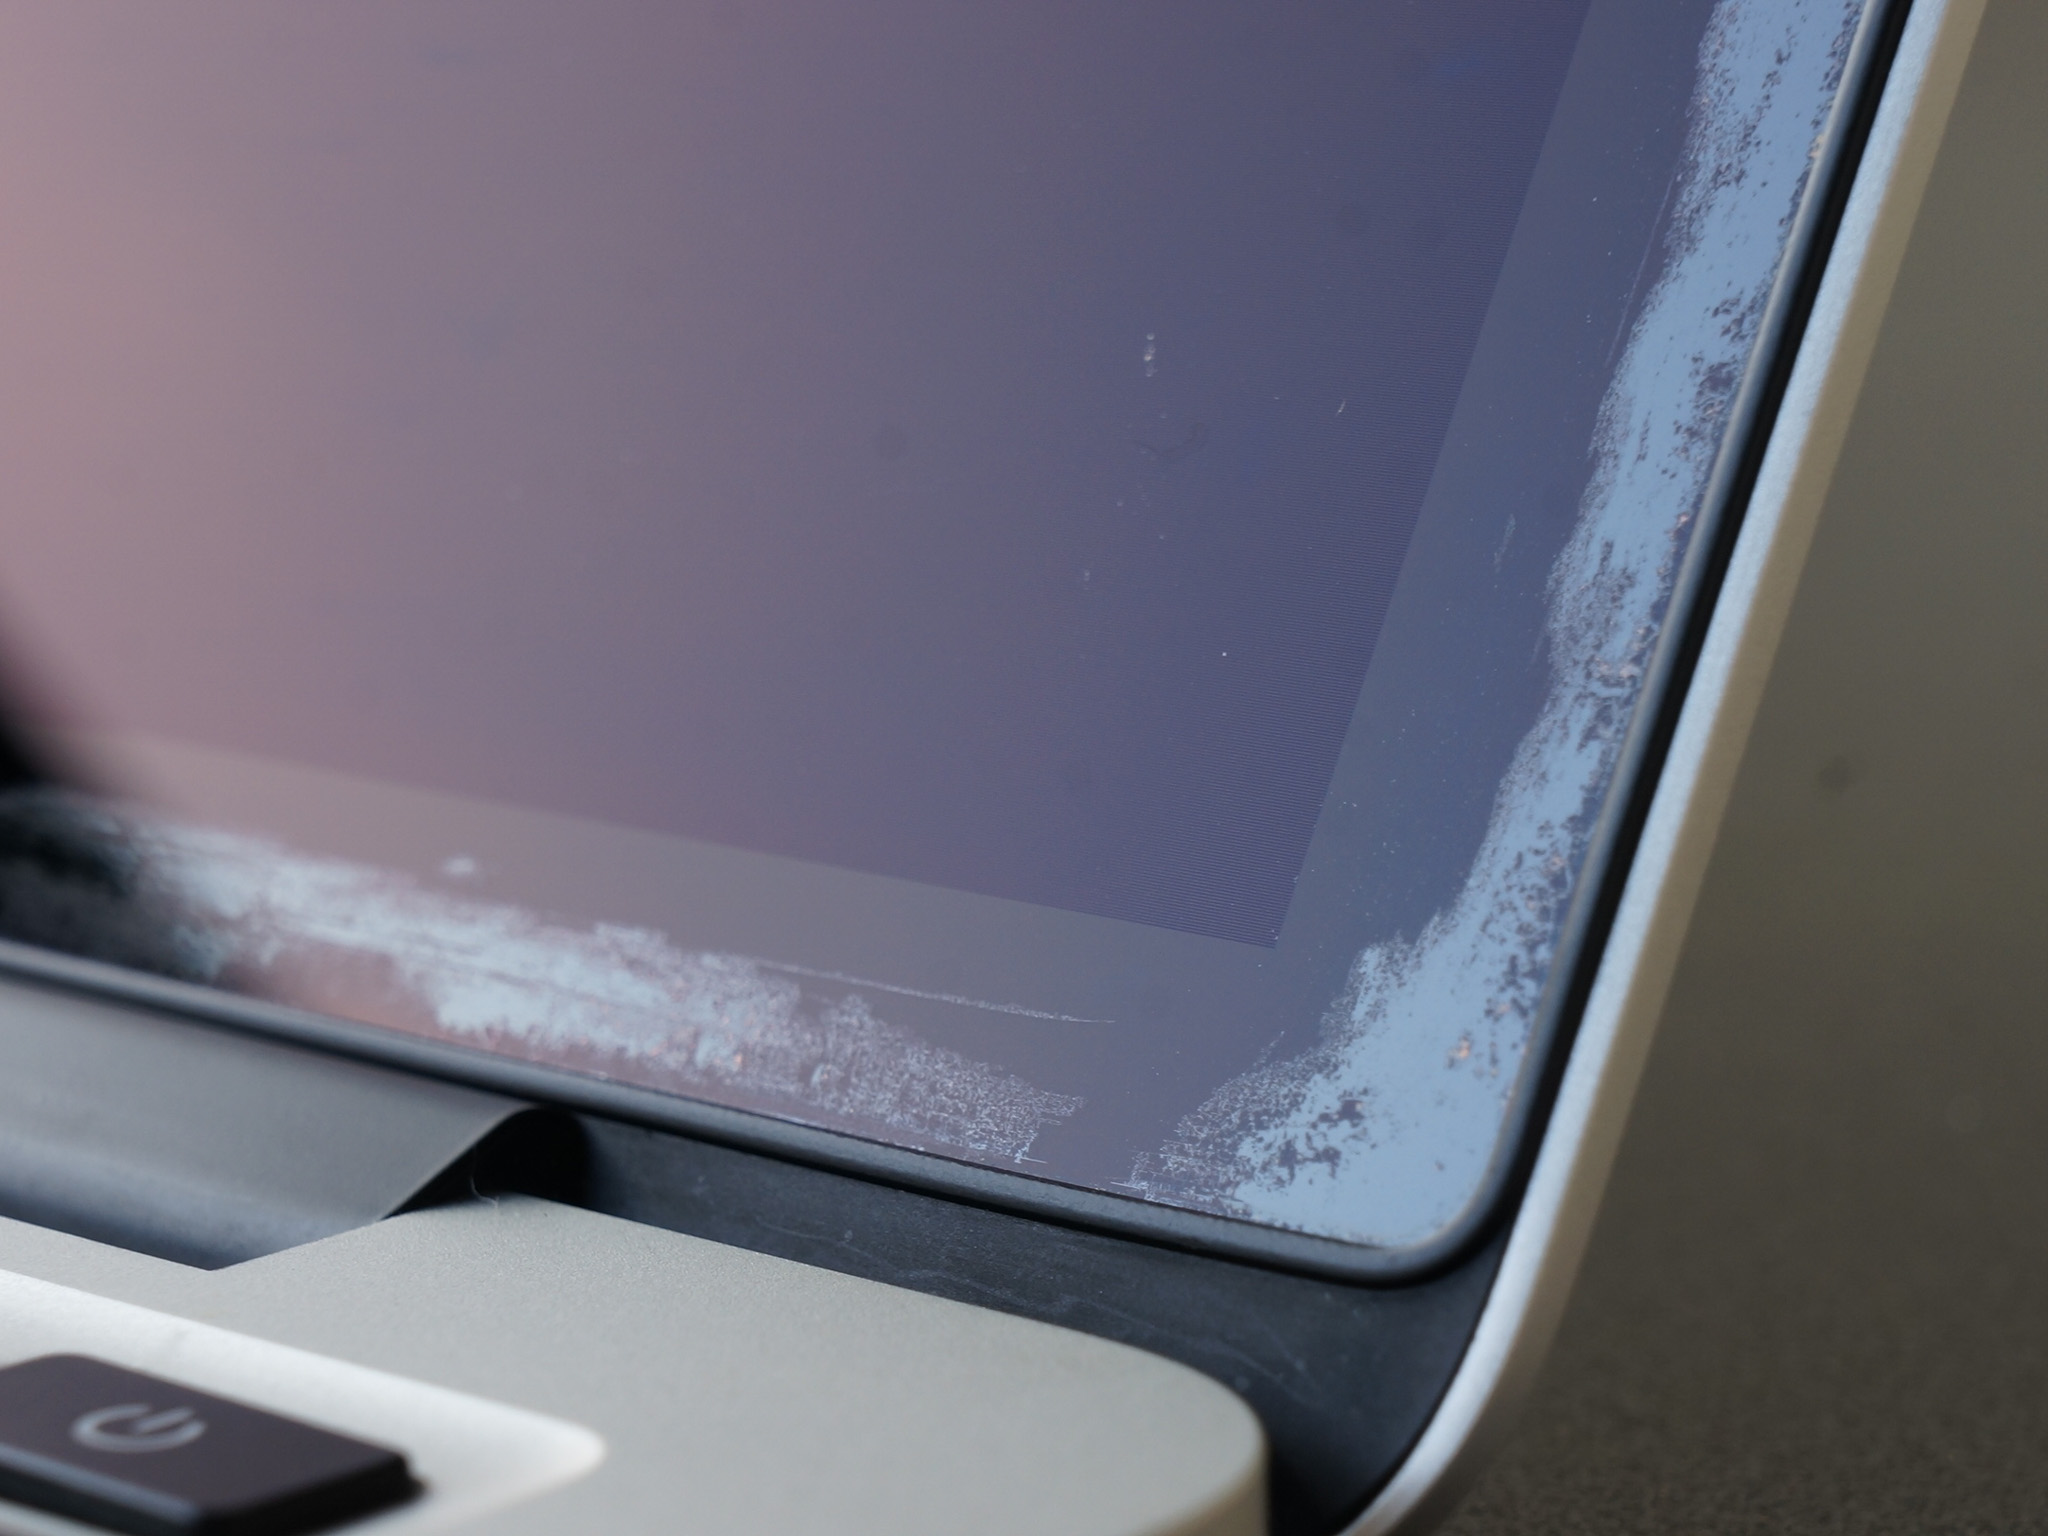 Lần 3, Apple tiếp tục nới rộng chương trình thay miễn phí lớp chống chói trên MacBook